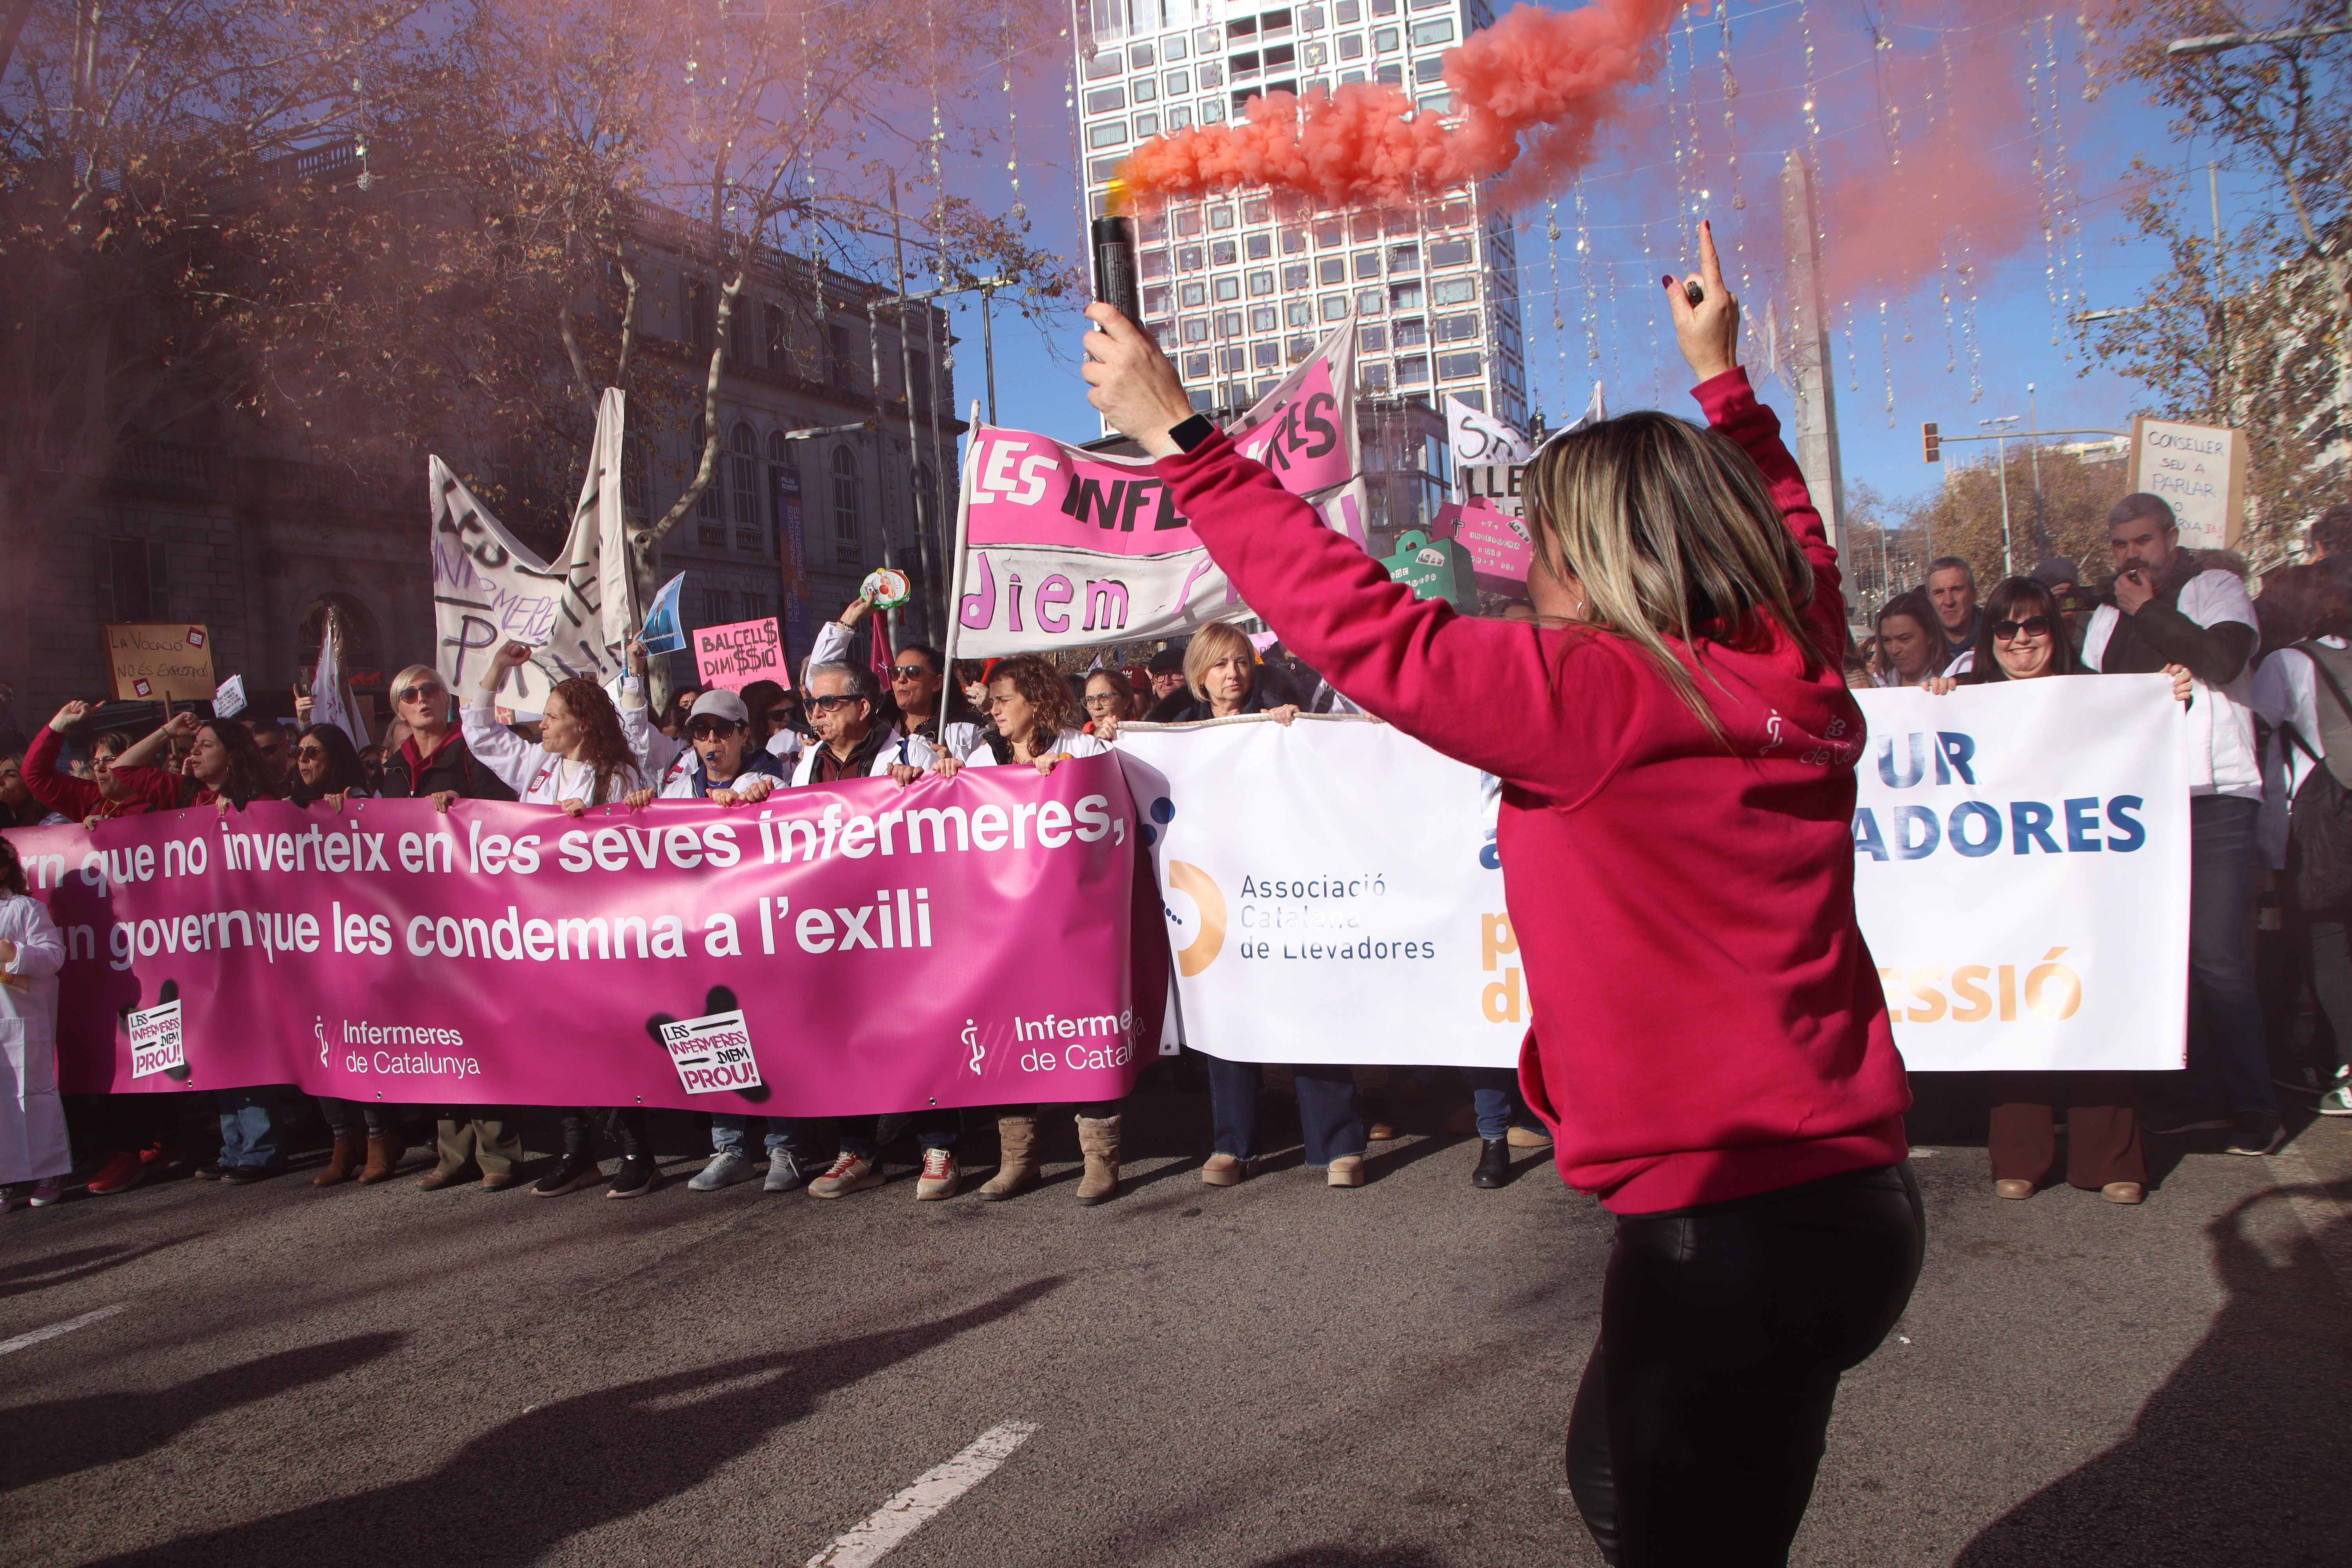 Las enfermeras vuelven a salir a las calles después de un mes de huelga indefinida: "Condenadas al exilio"